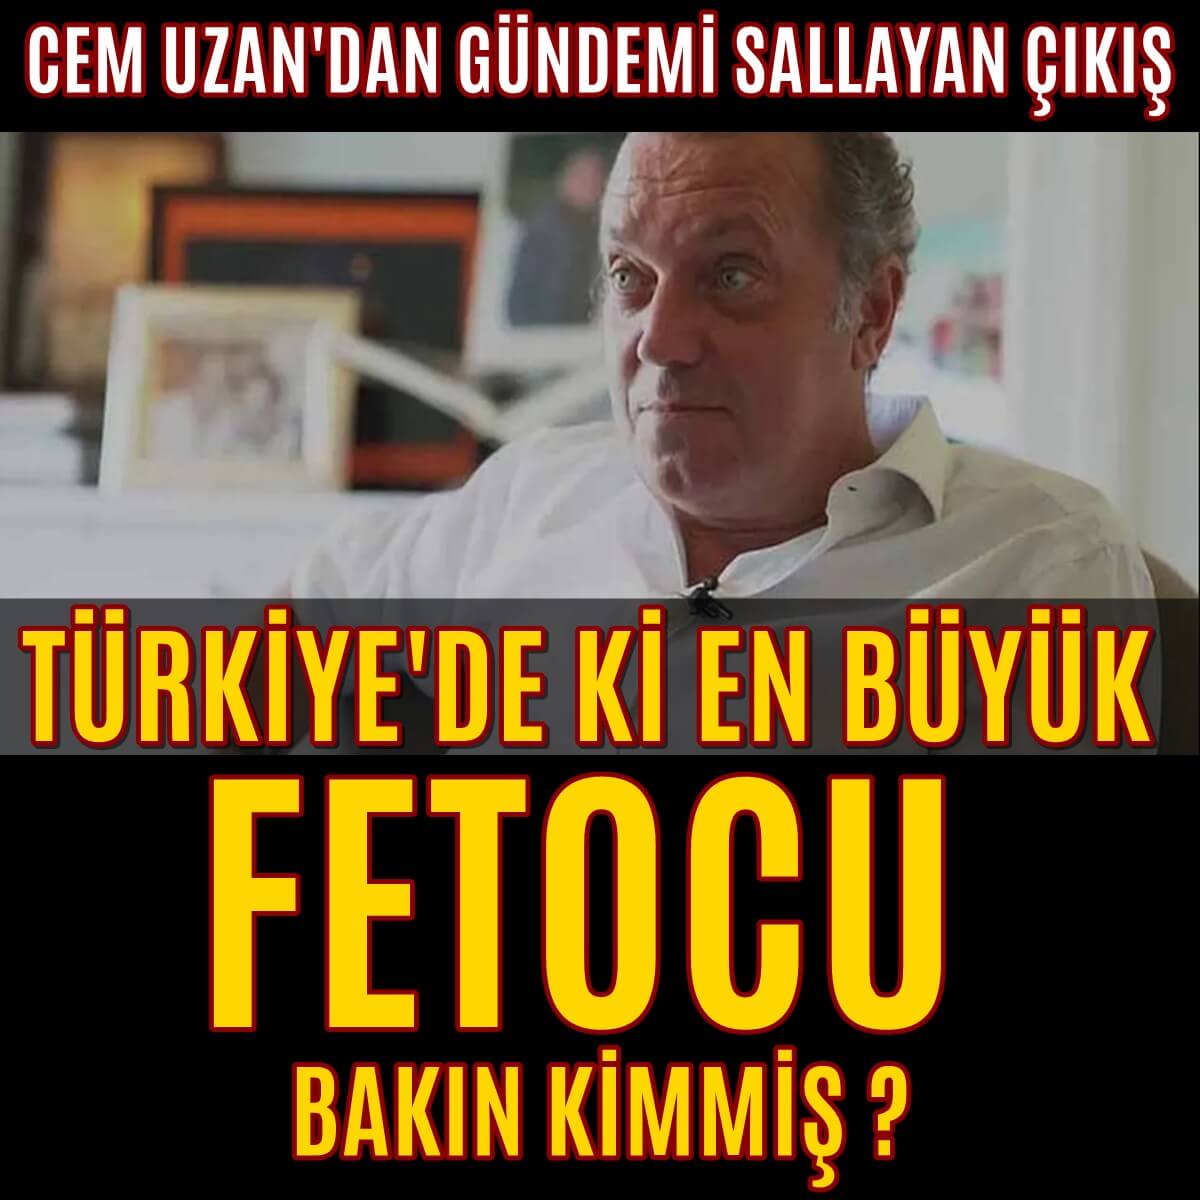 Cem UZAN Türkiye'nin En büyük FETO'cusu diyerek onu işaret etti...